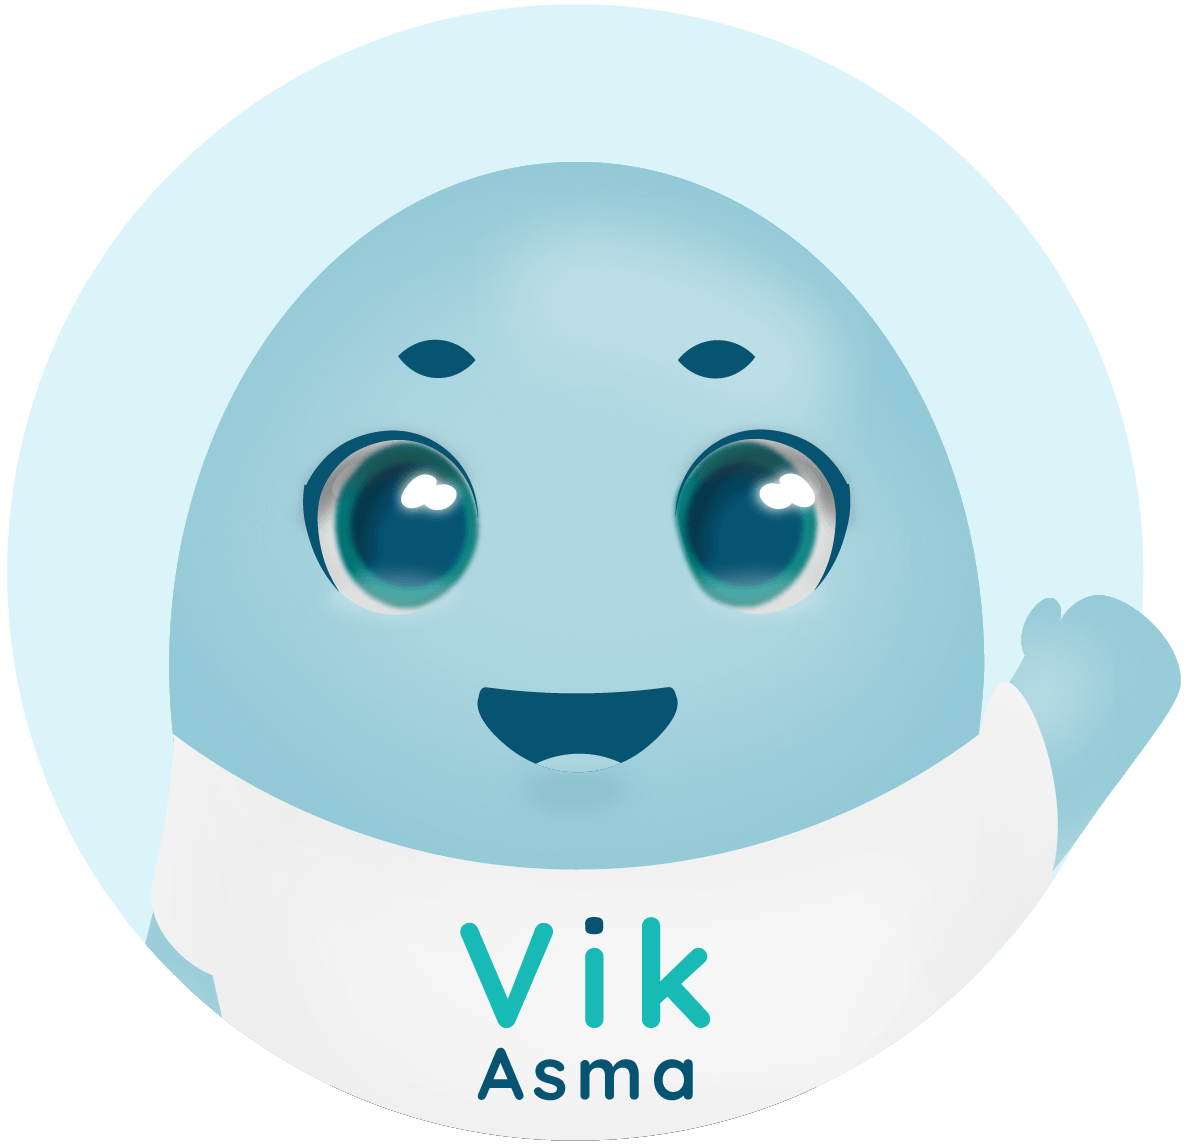 Avatar de Vik saludando y hablando.